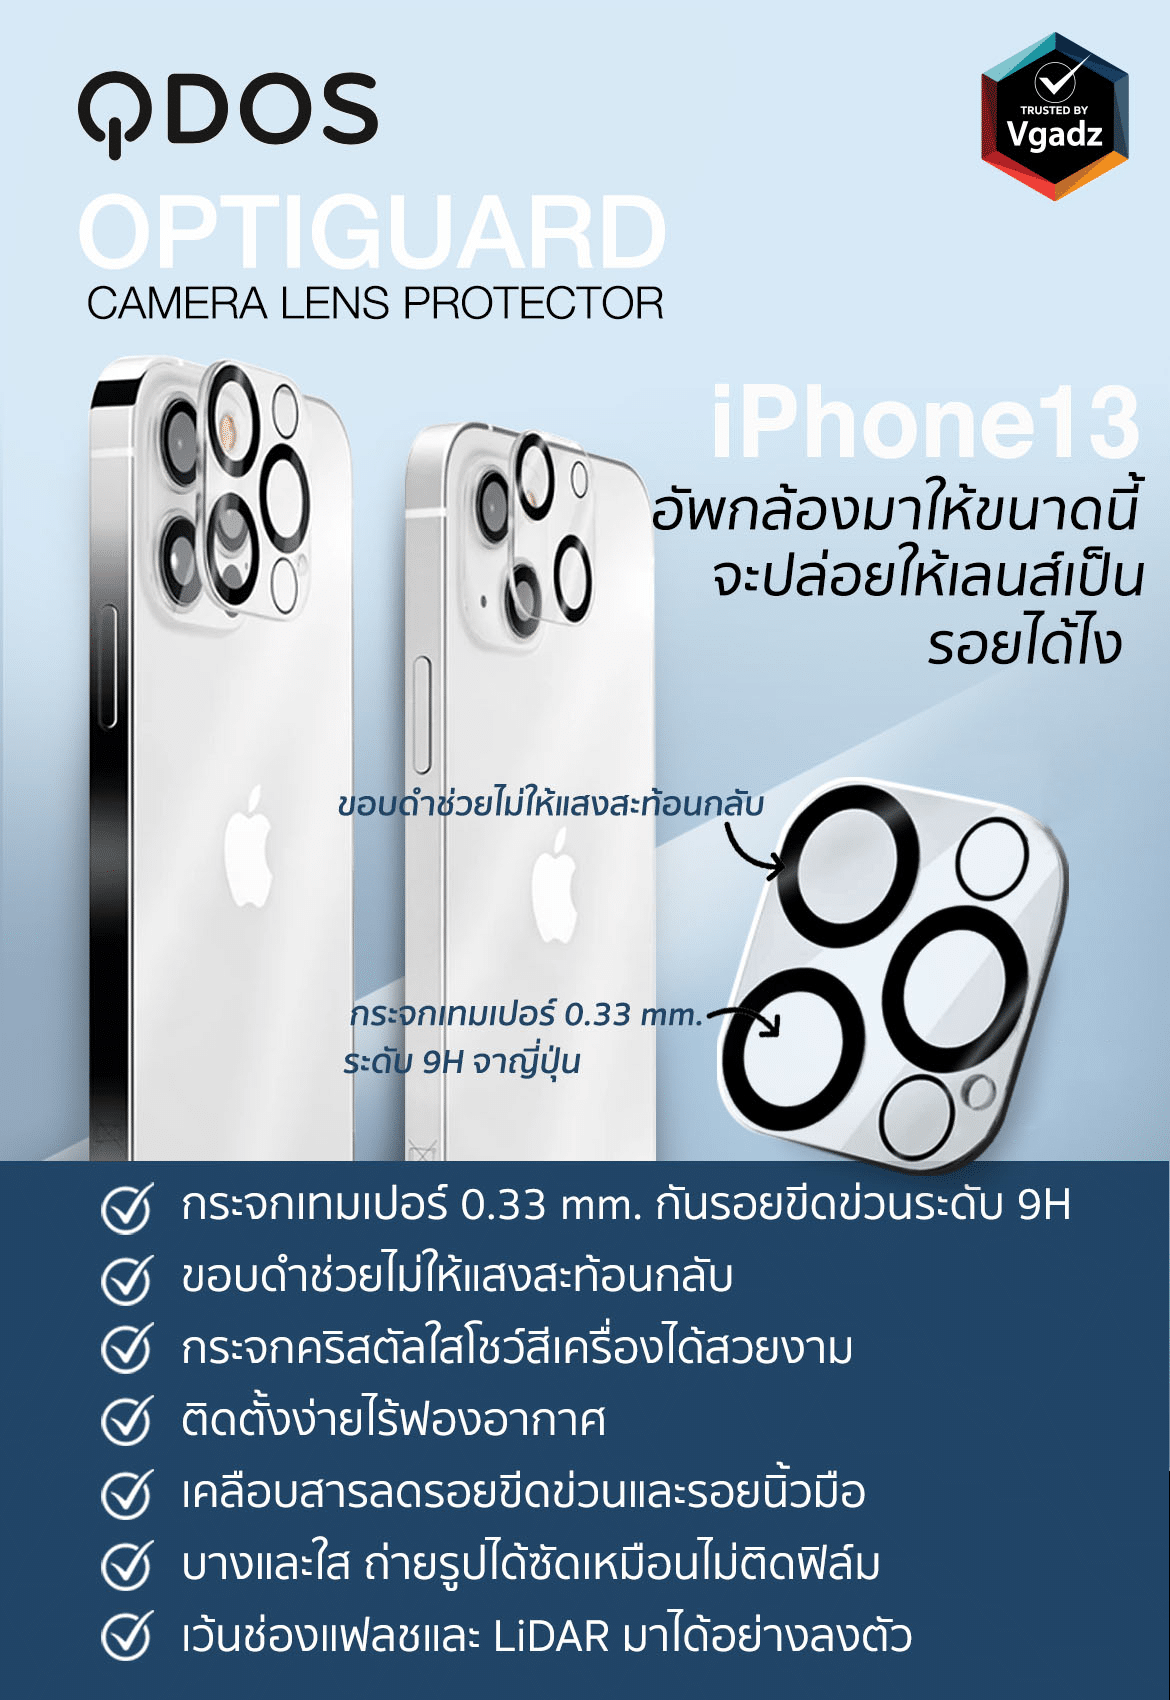 ฟิล์มเลนส์กล้อง QDOS รุ่น OptiGuard Camera Lens Protector - iPhone 13 Pro Max